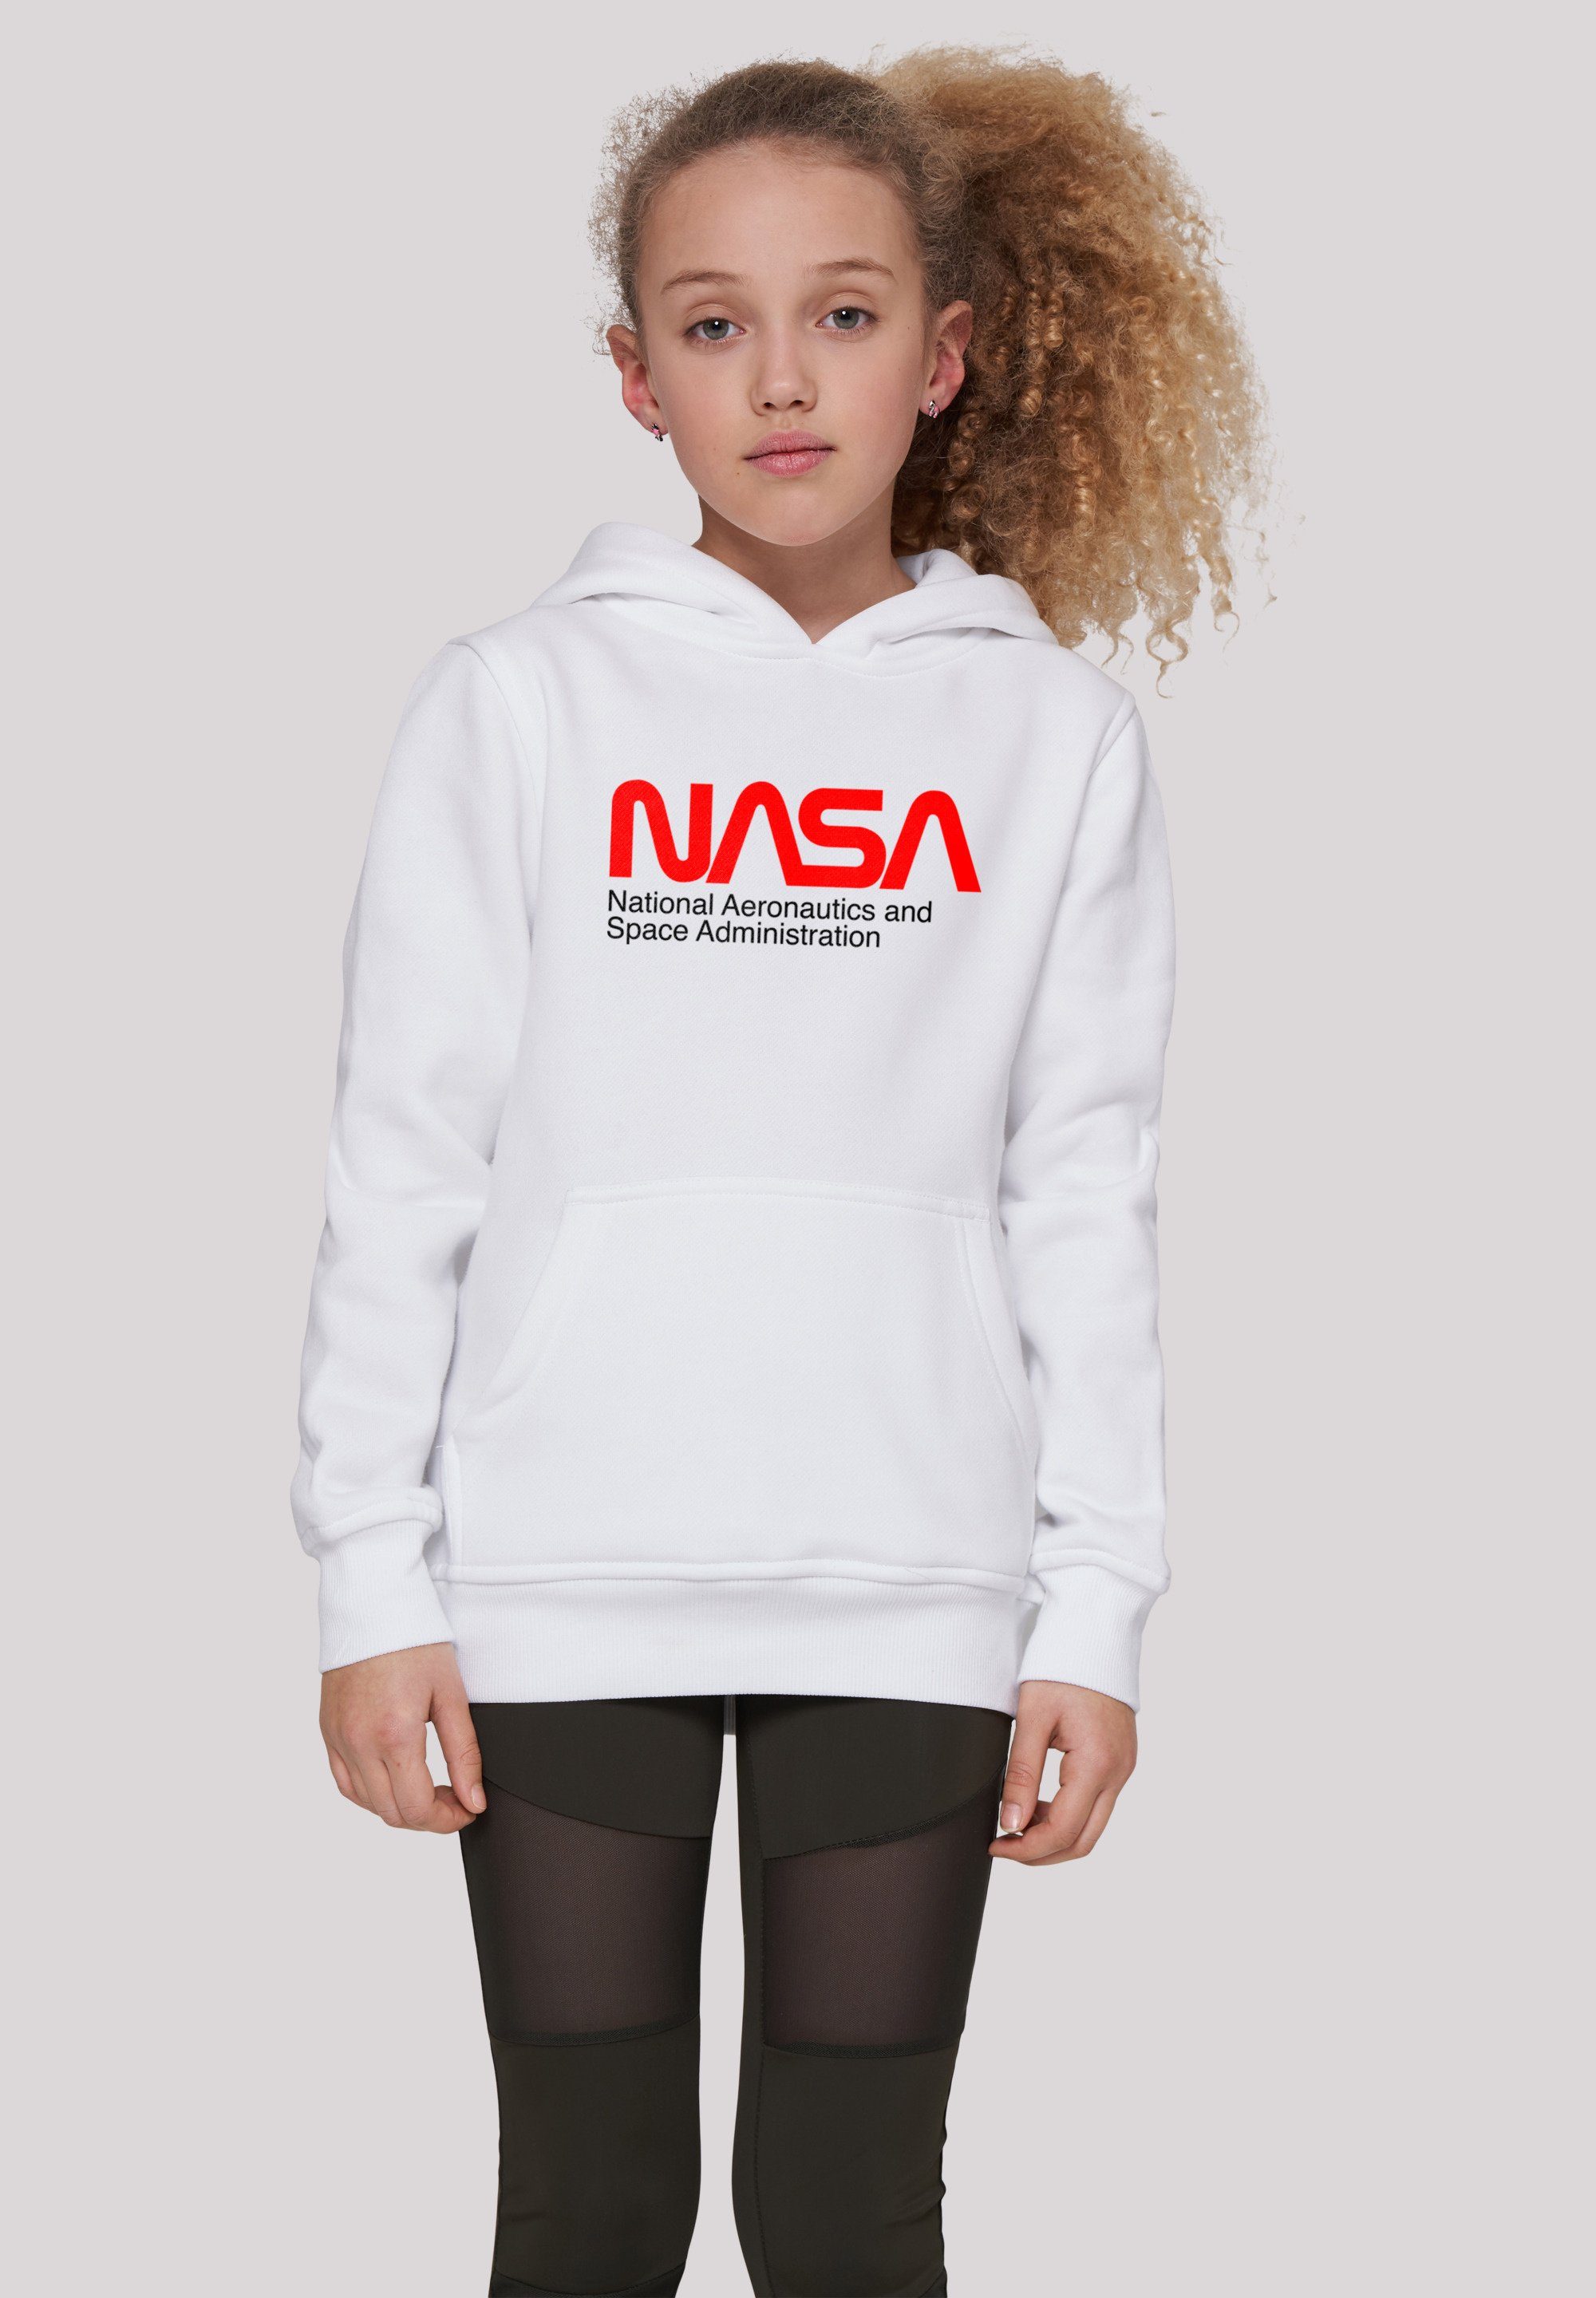 Merch,Jungen,Mädchen,Bedruckt Unisex Kinder,Premium F4NT4STIC NASA Space Sweatshirt And Aeronautics